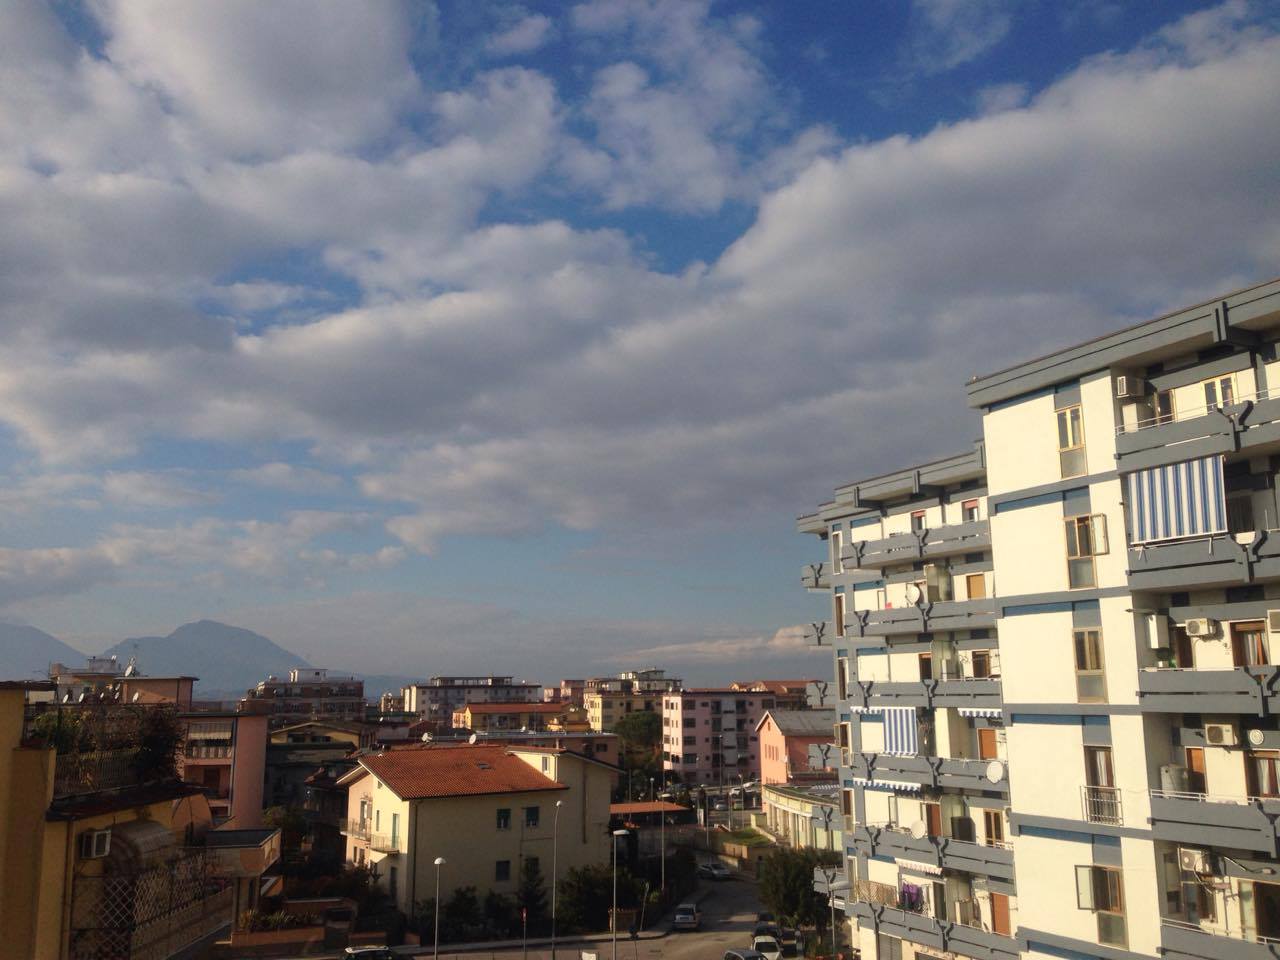 Benevento| Comitato quartiere Cappuccini: “bene le telecamere, ma urge più sicurezza”